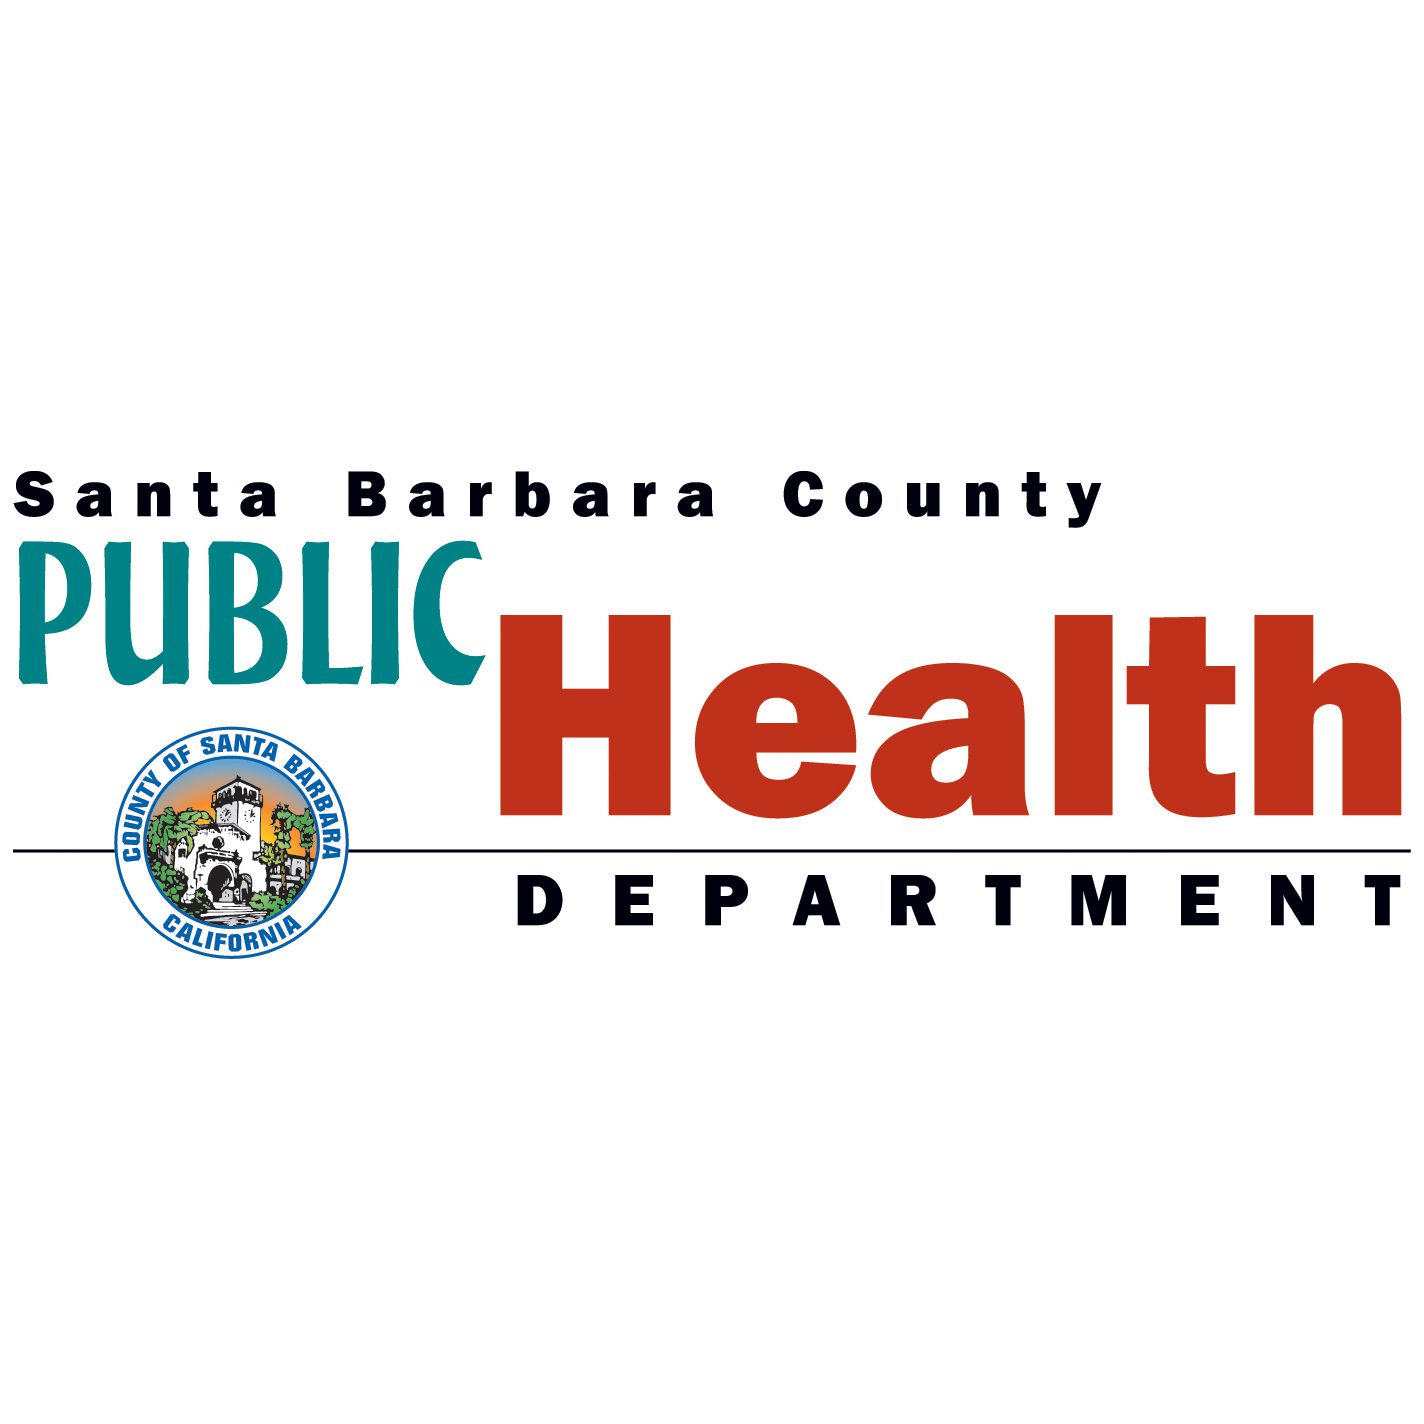 Update on confirmed measles case in Santa Barbara